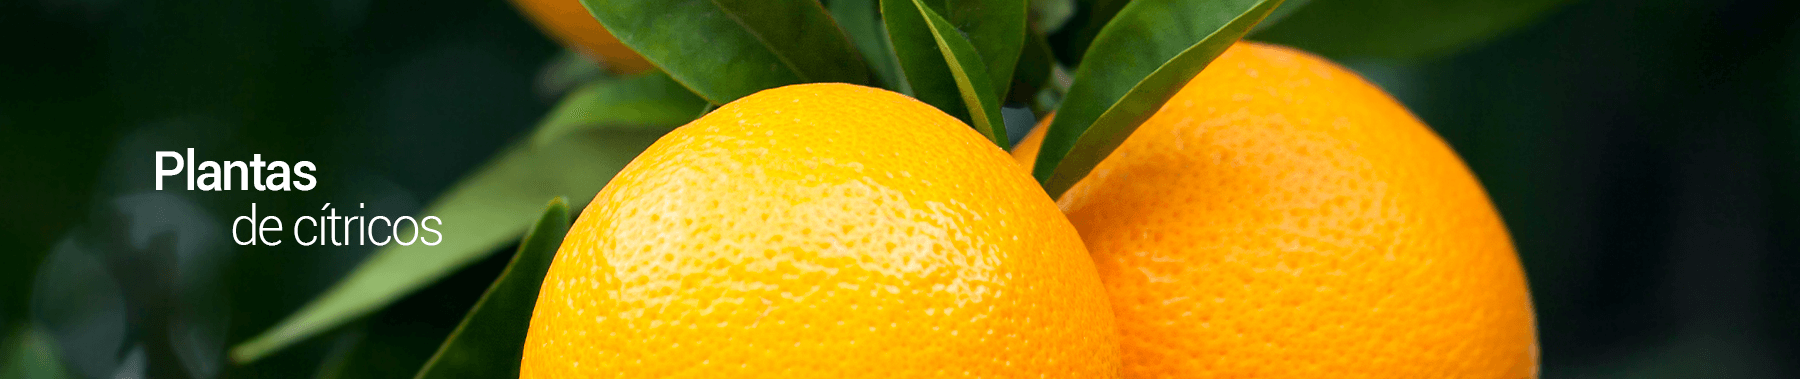 citricos-los-vinedos-PERU-2